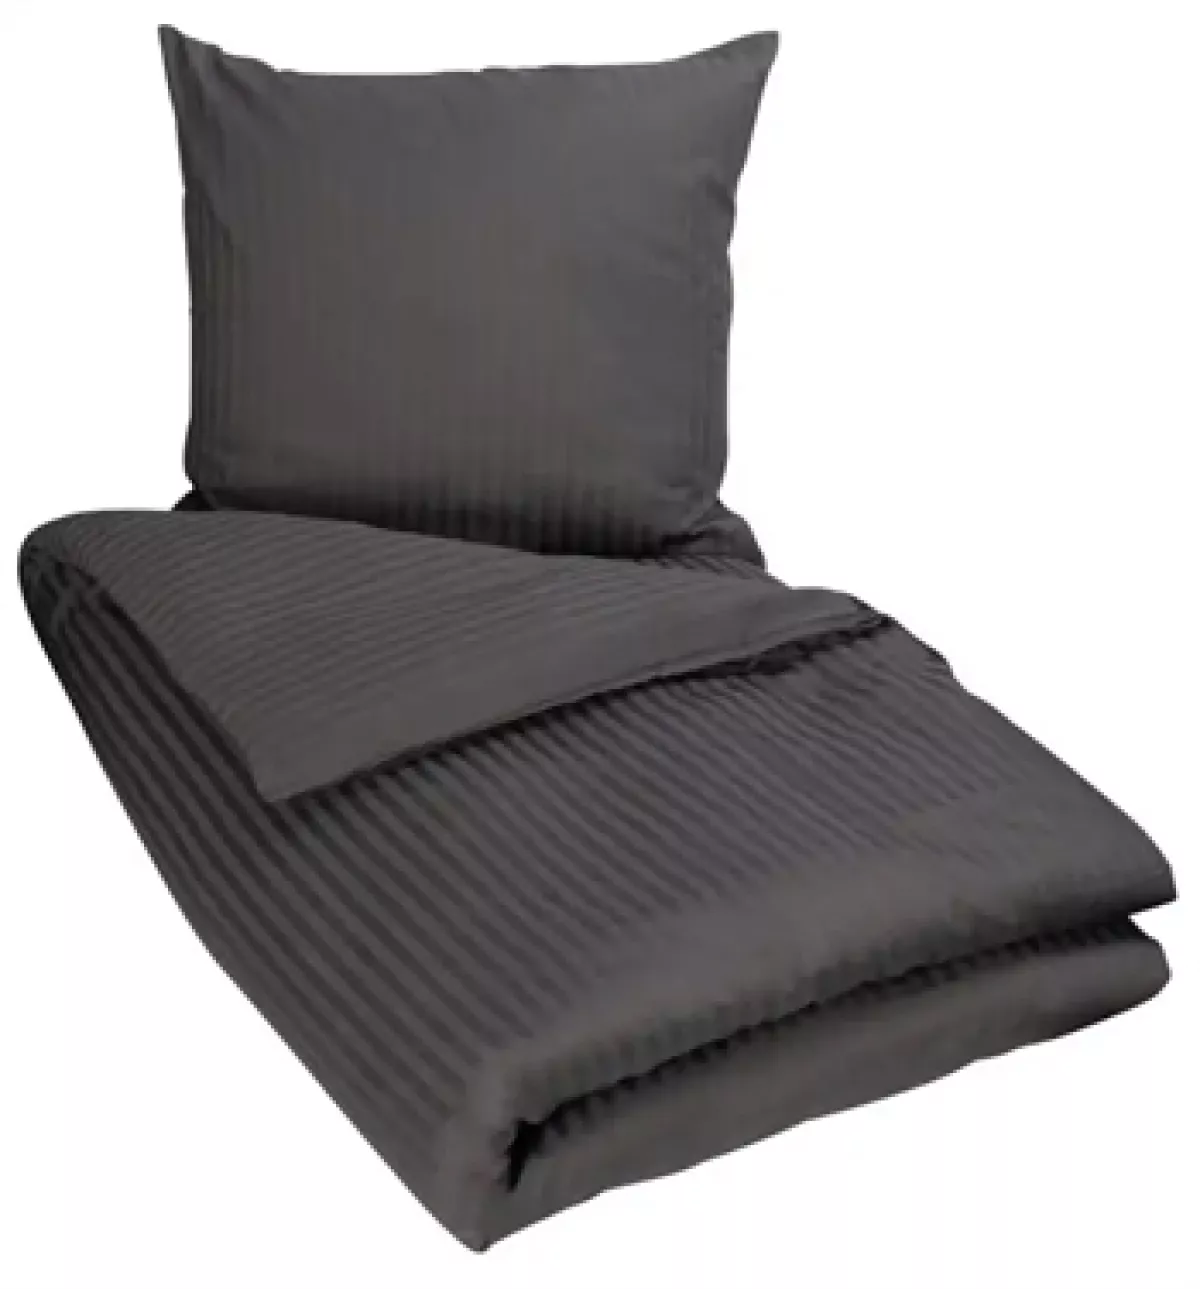 #3 - Mørkegråt sengetøj 140x200 cm - Sengesæt i 100% Bomuldssatin - Borg Living sengelinned